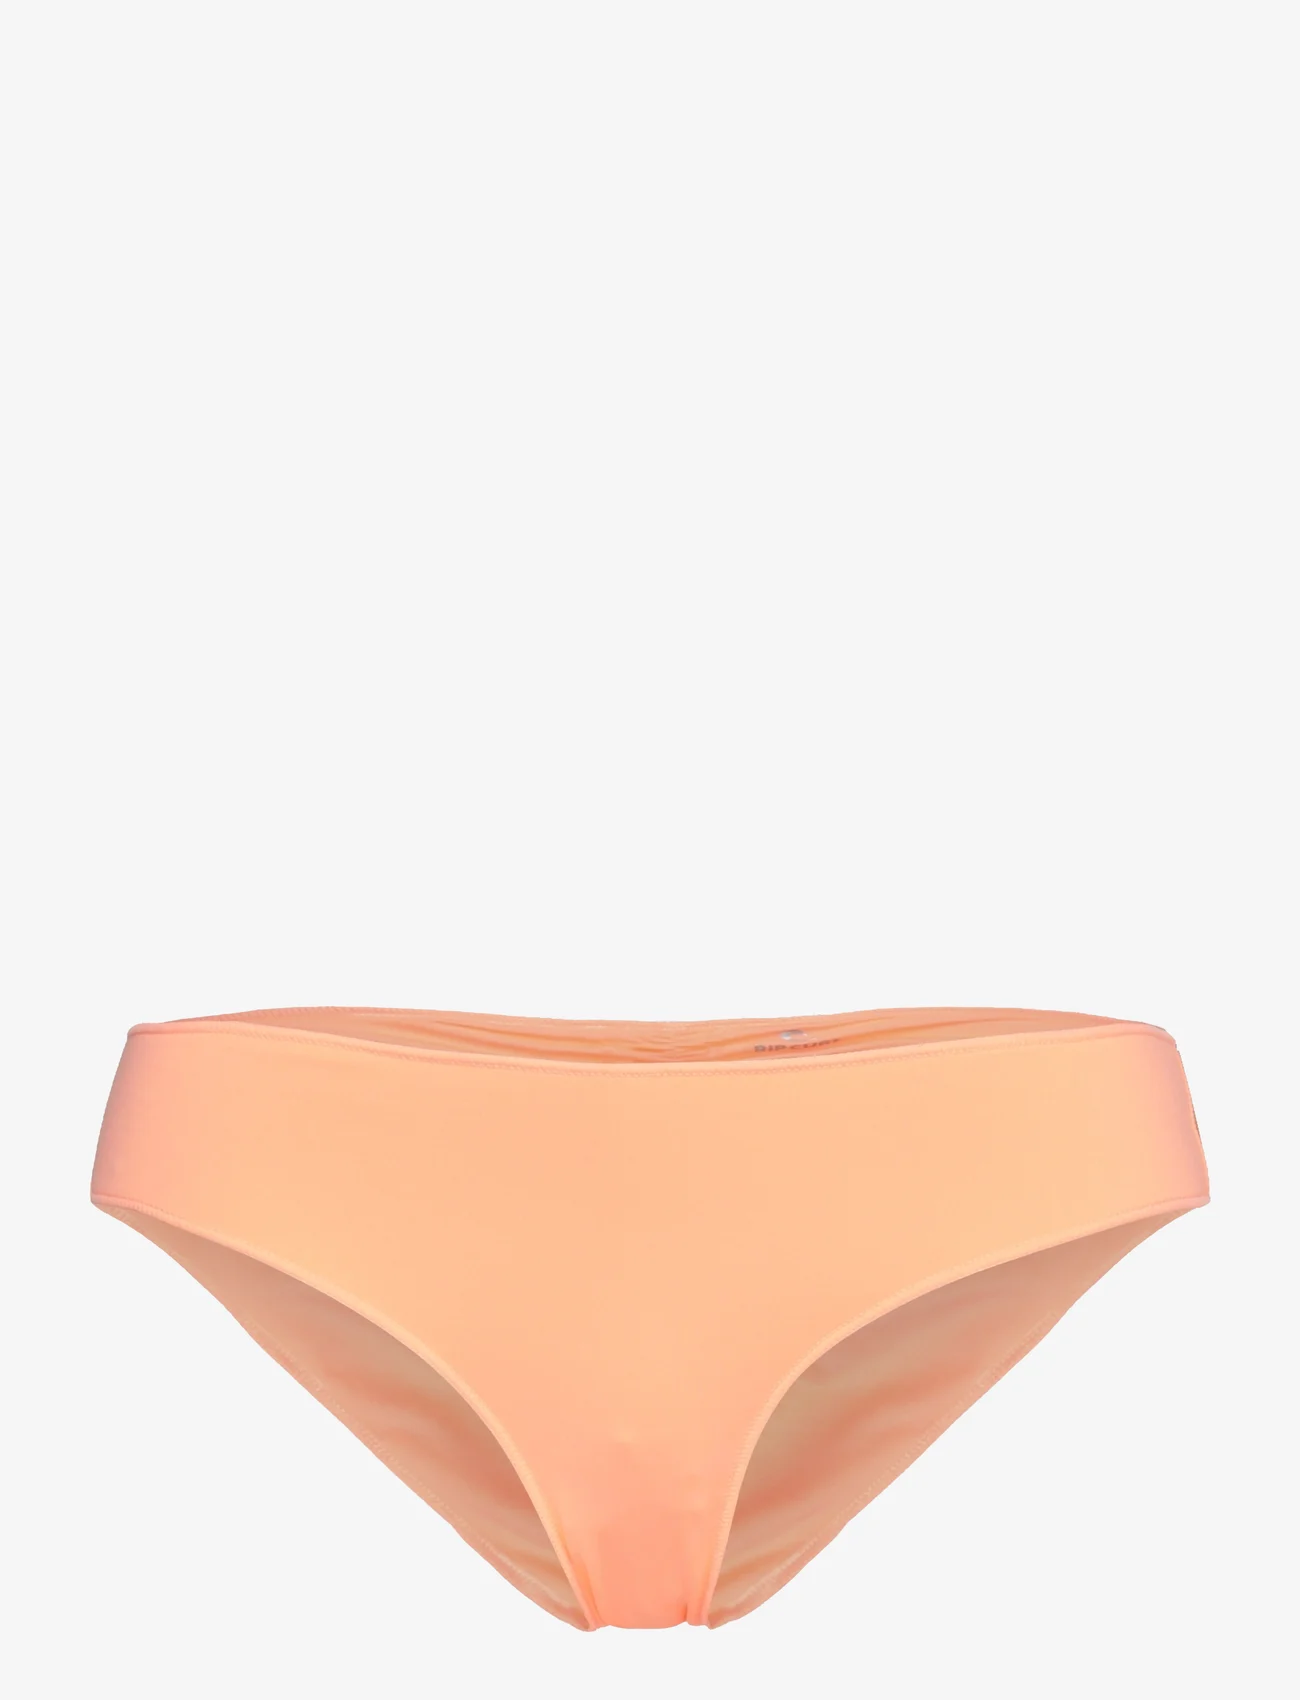 Rip Curl - CLASSIC SURF CHEEKY PANT - bikinibriefs - bright peach - 0